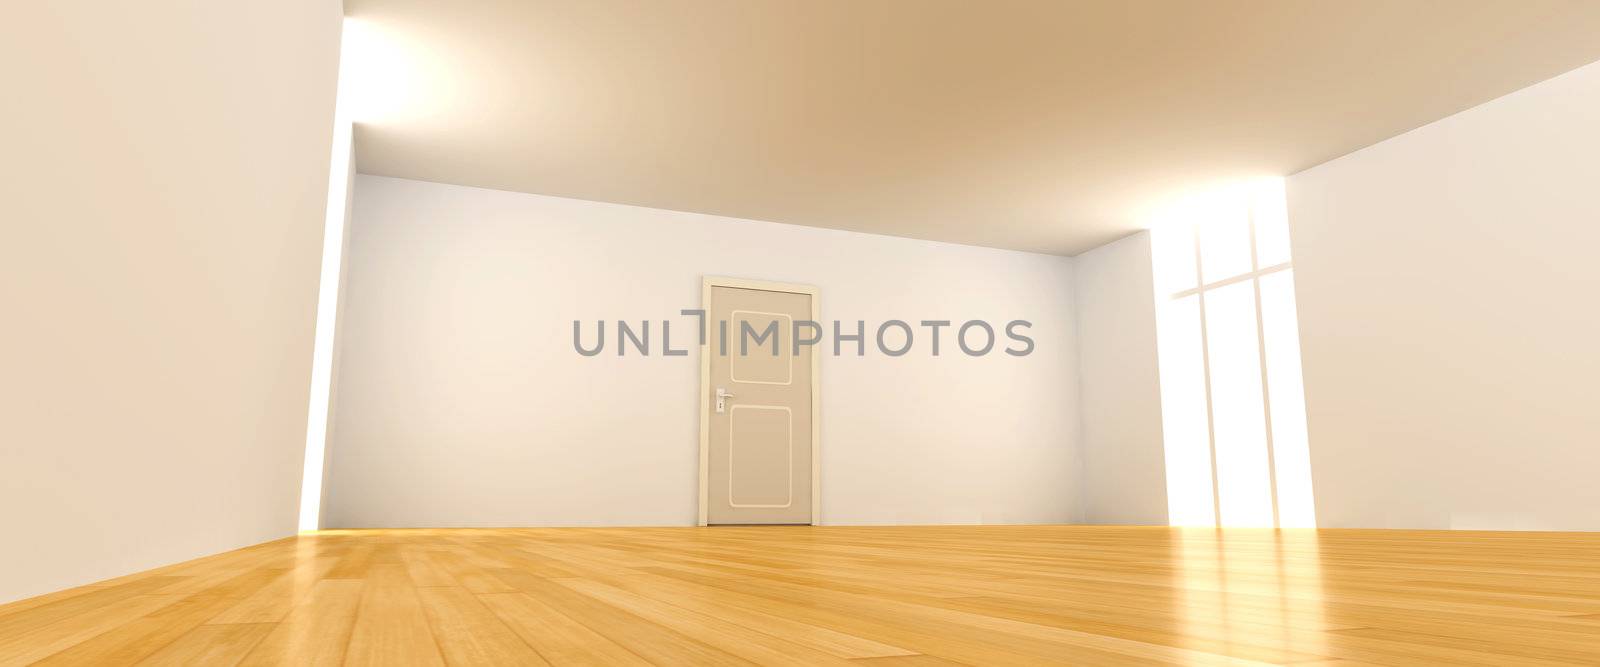 Door in a empty room	 by Spectral